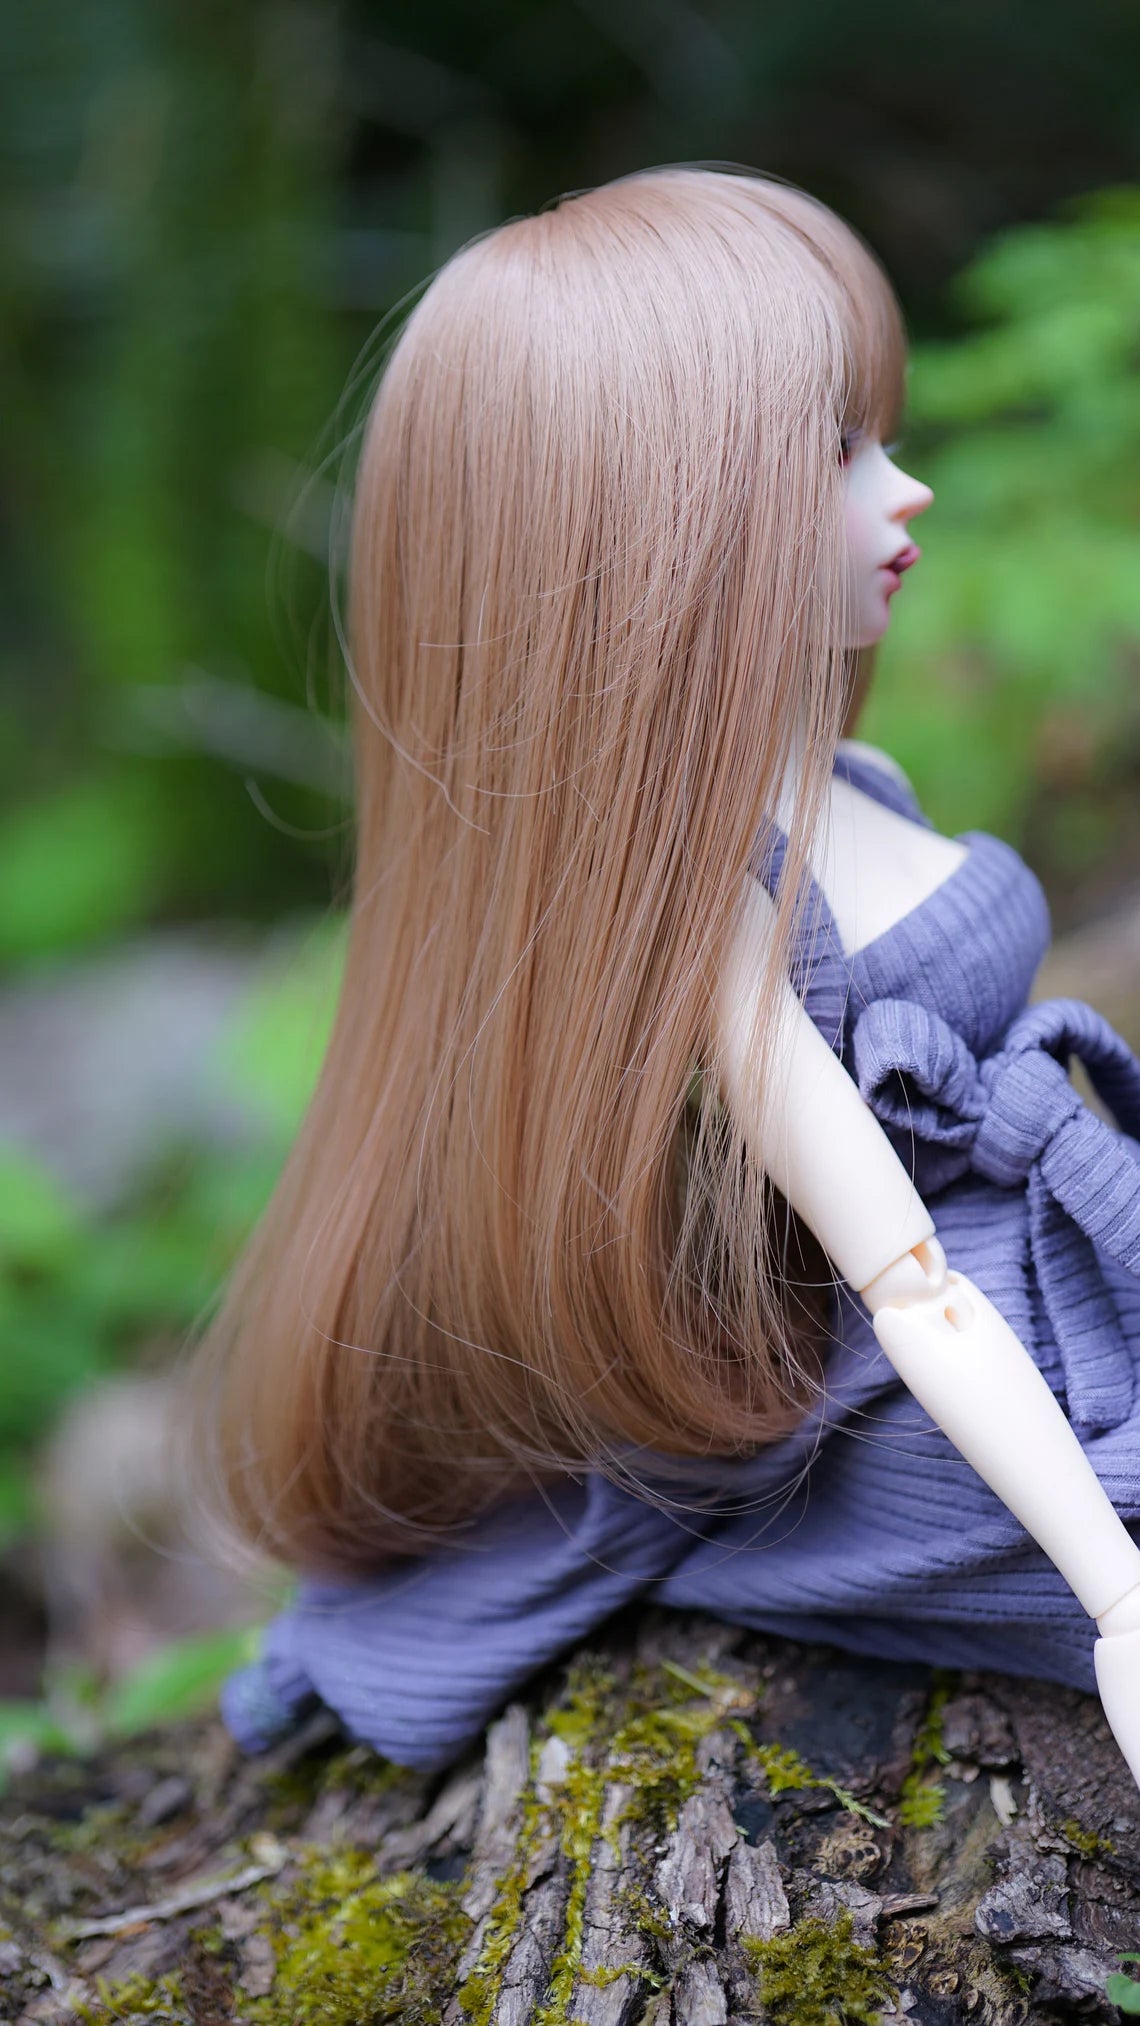 Custom doll Wig for Minifee 1/4 BJD Dolls- "TAN CAPS" 6-7" head size of Bjd, msd, Boneka ,Fairyland Minifee dolls light brown natural